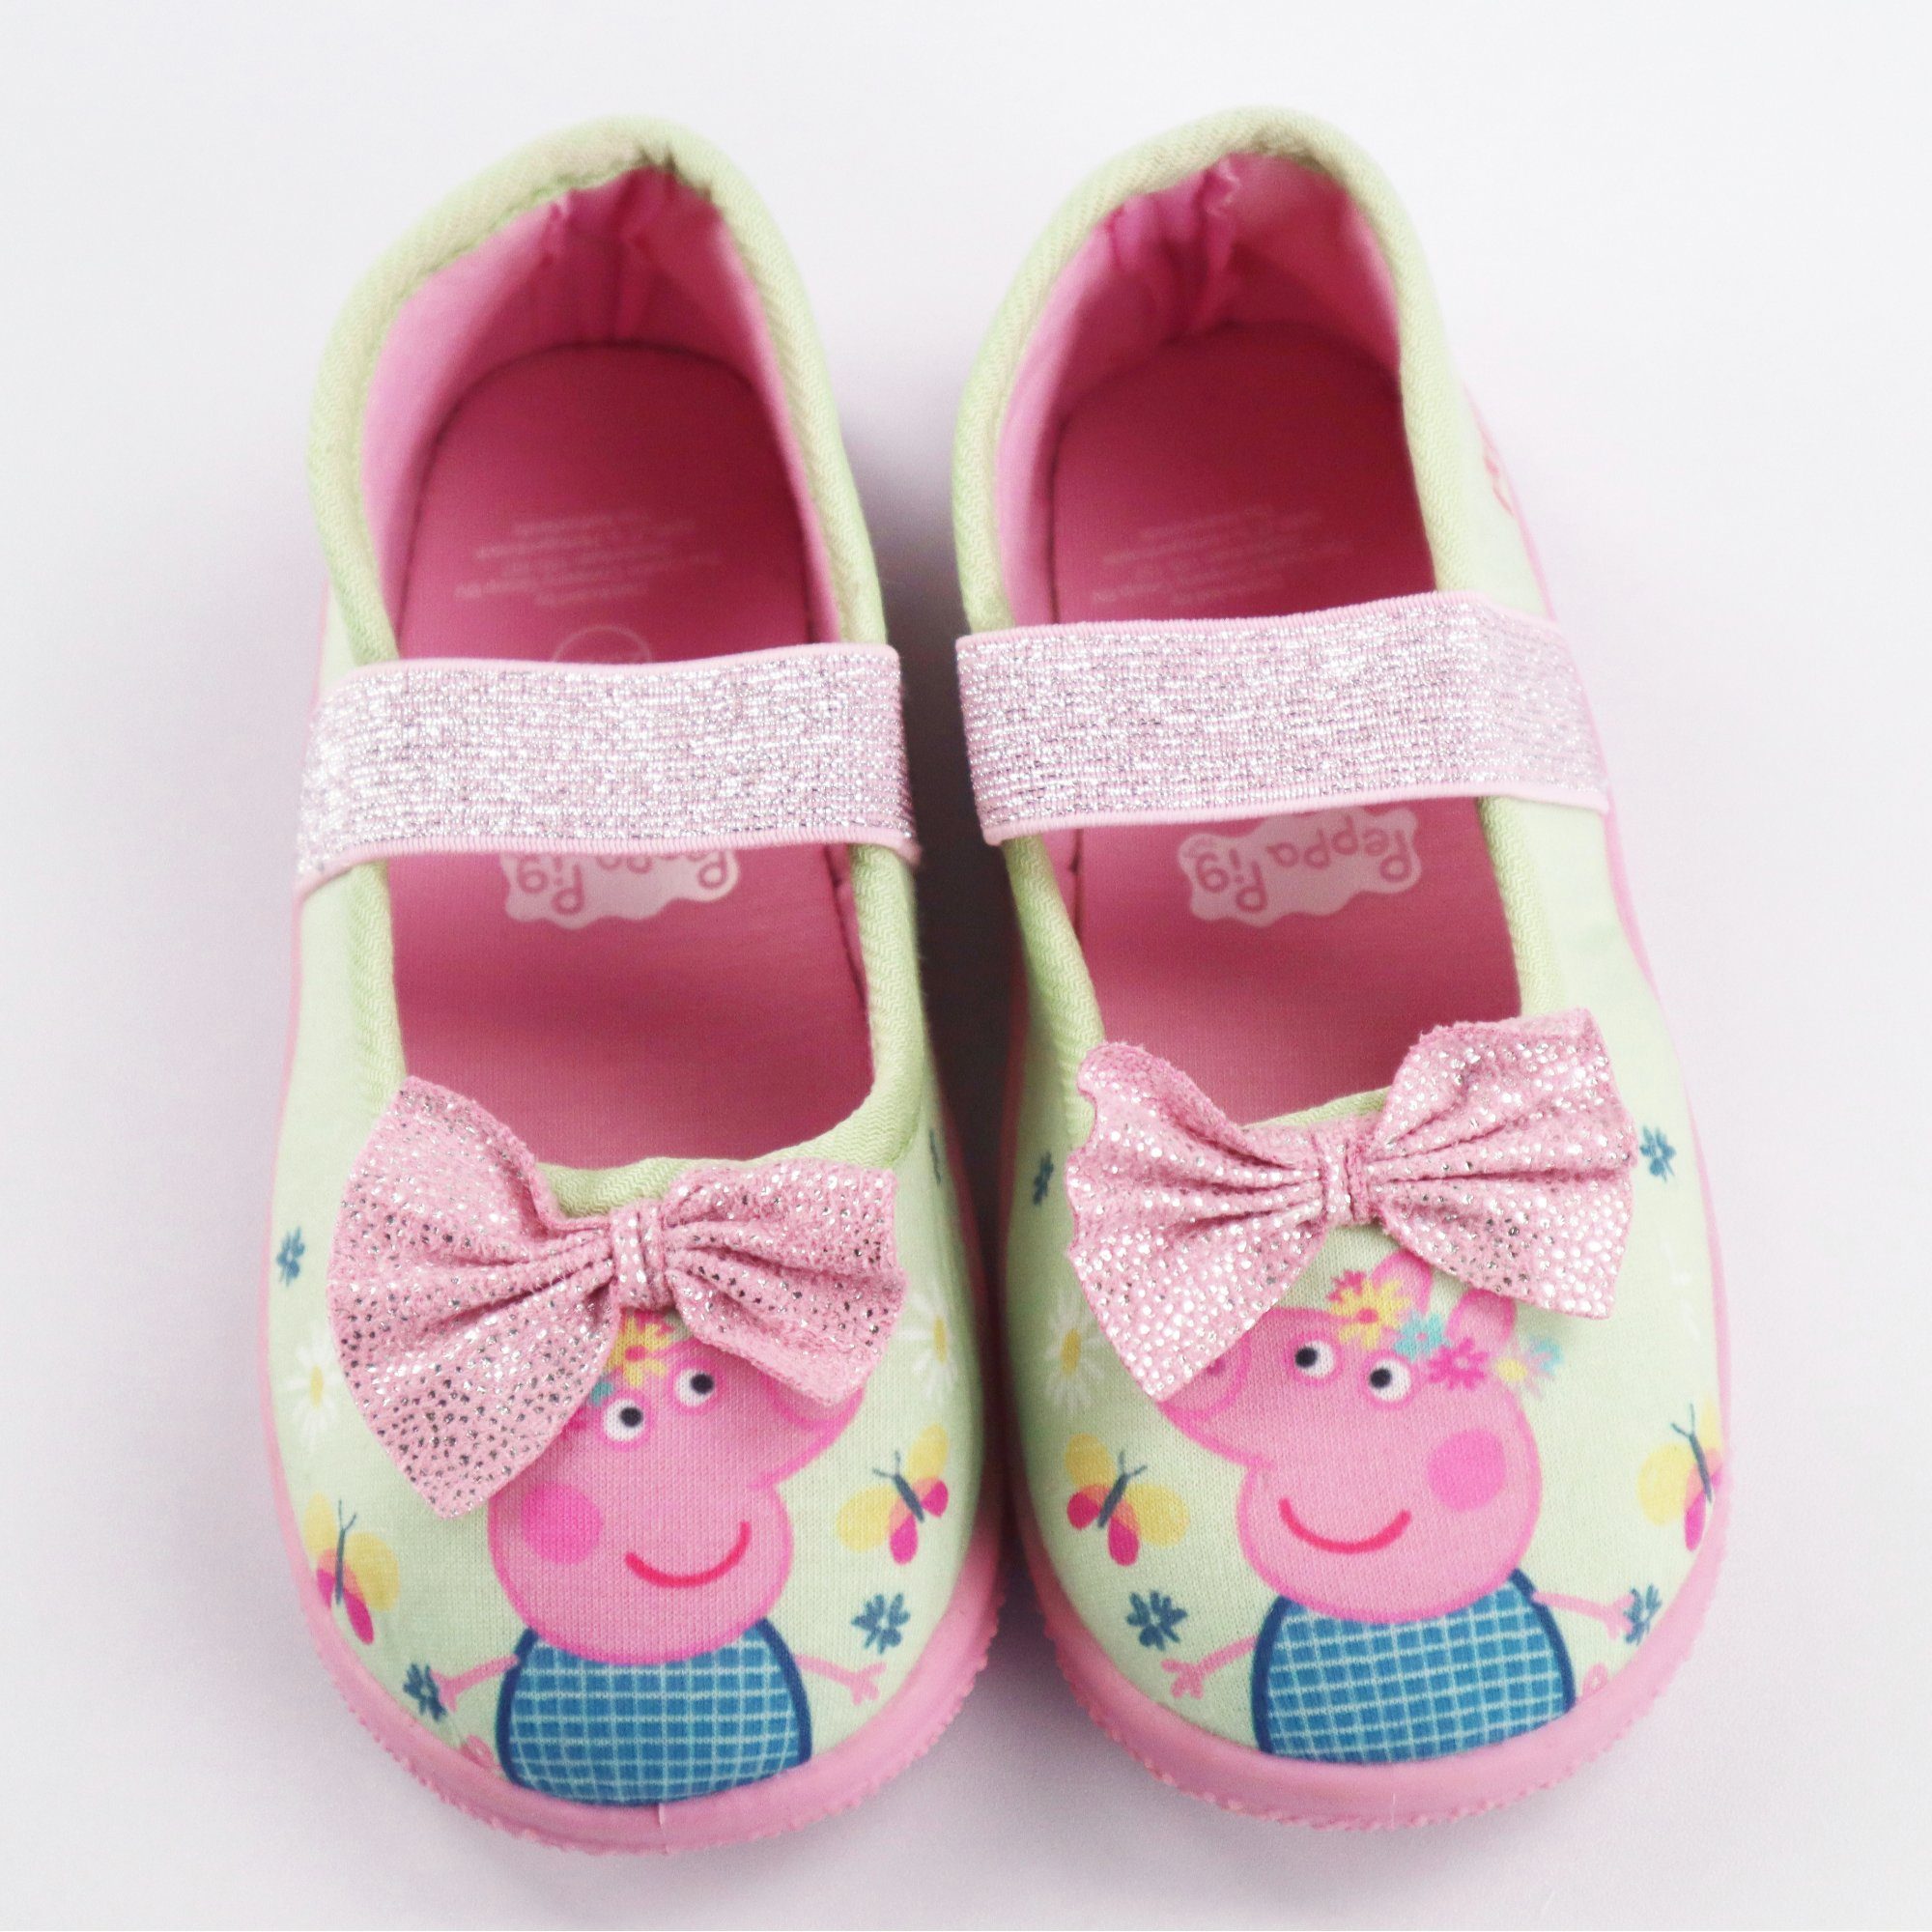 Peppa Pig Peppa Wutz Pantoffeln Kita Ballerina Pig 25-28 Kinder Schlüpfschuhe Slipper Gr